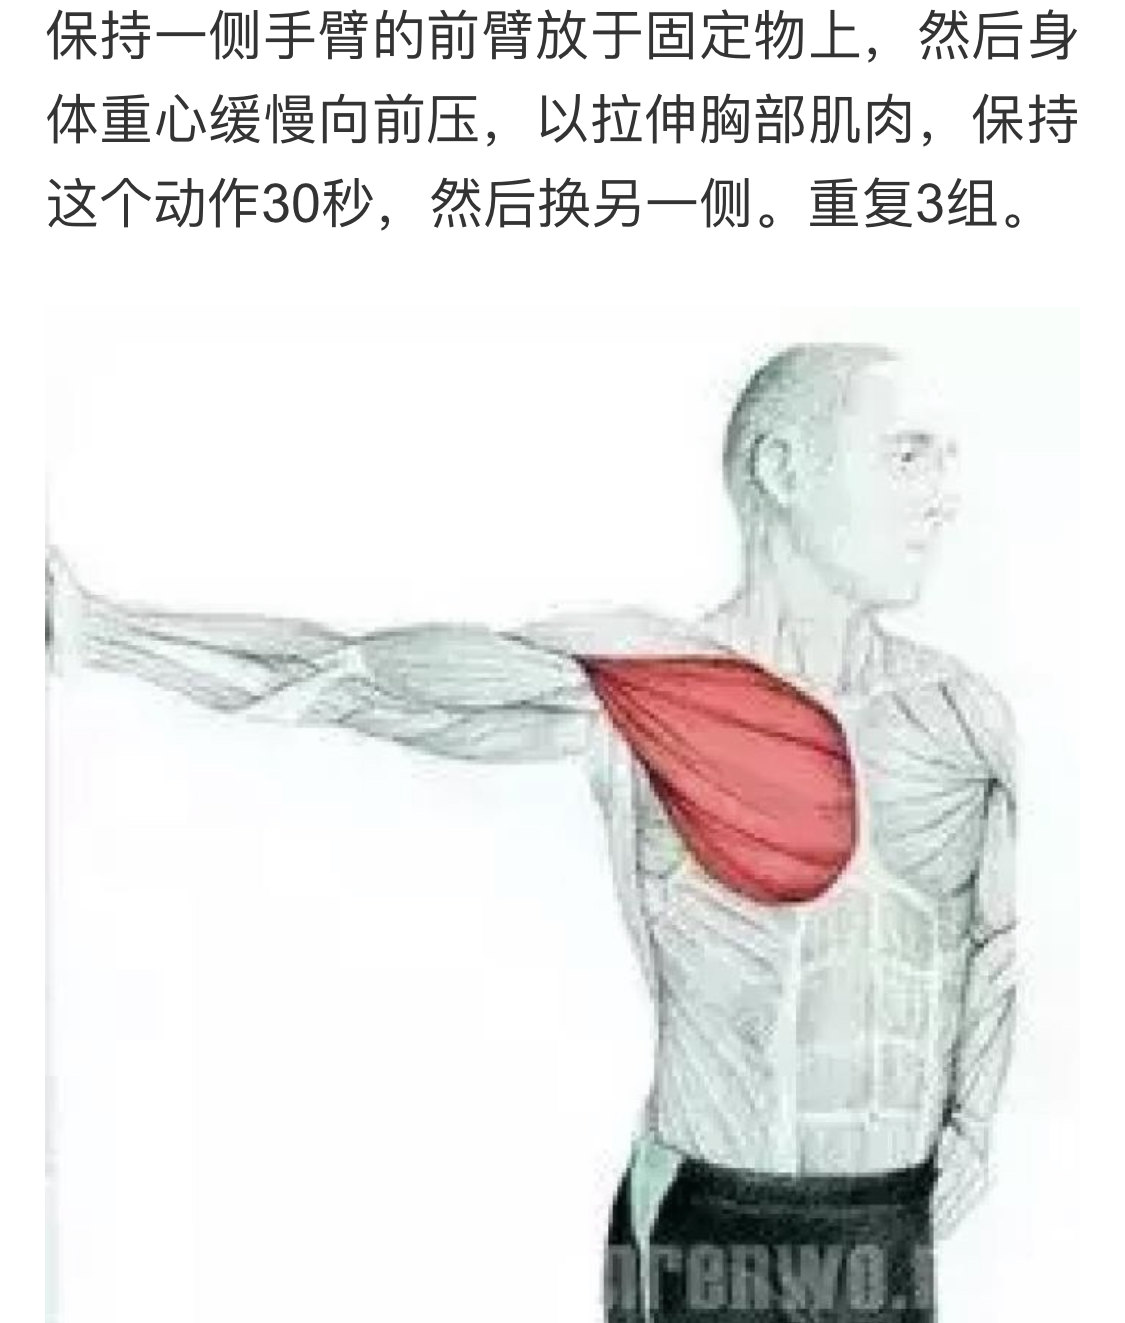 拉伸斜方肌上束7 手法放松斜方肌上束8 拉伸胸锁乳突肌9 拉伸斜角肌